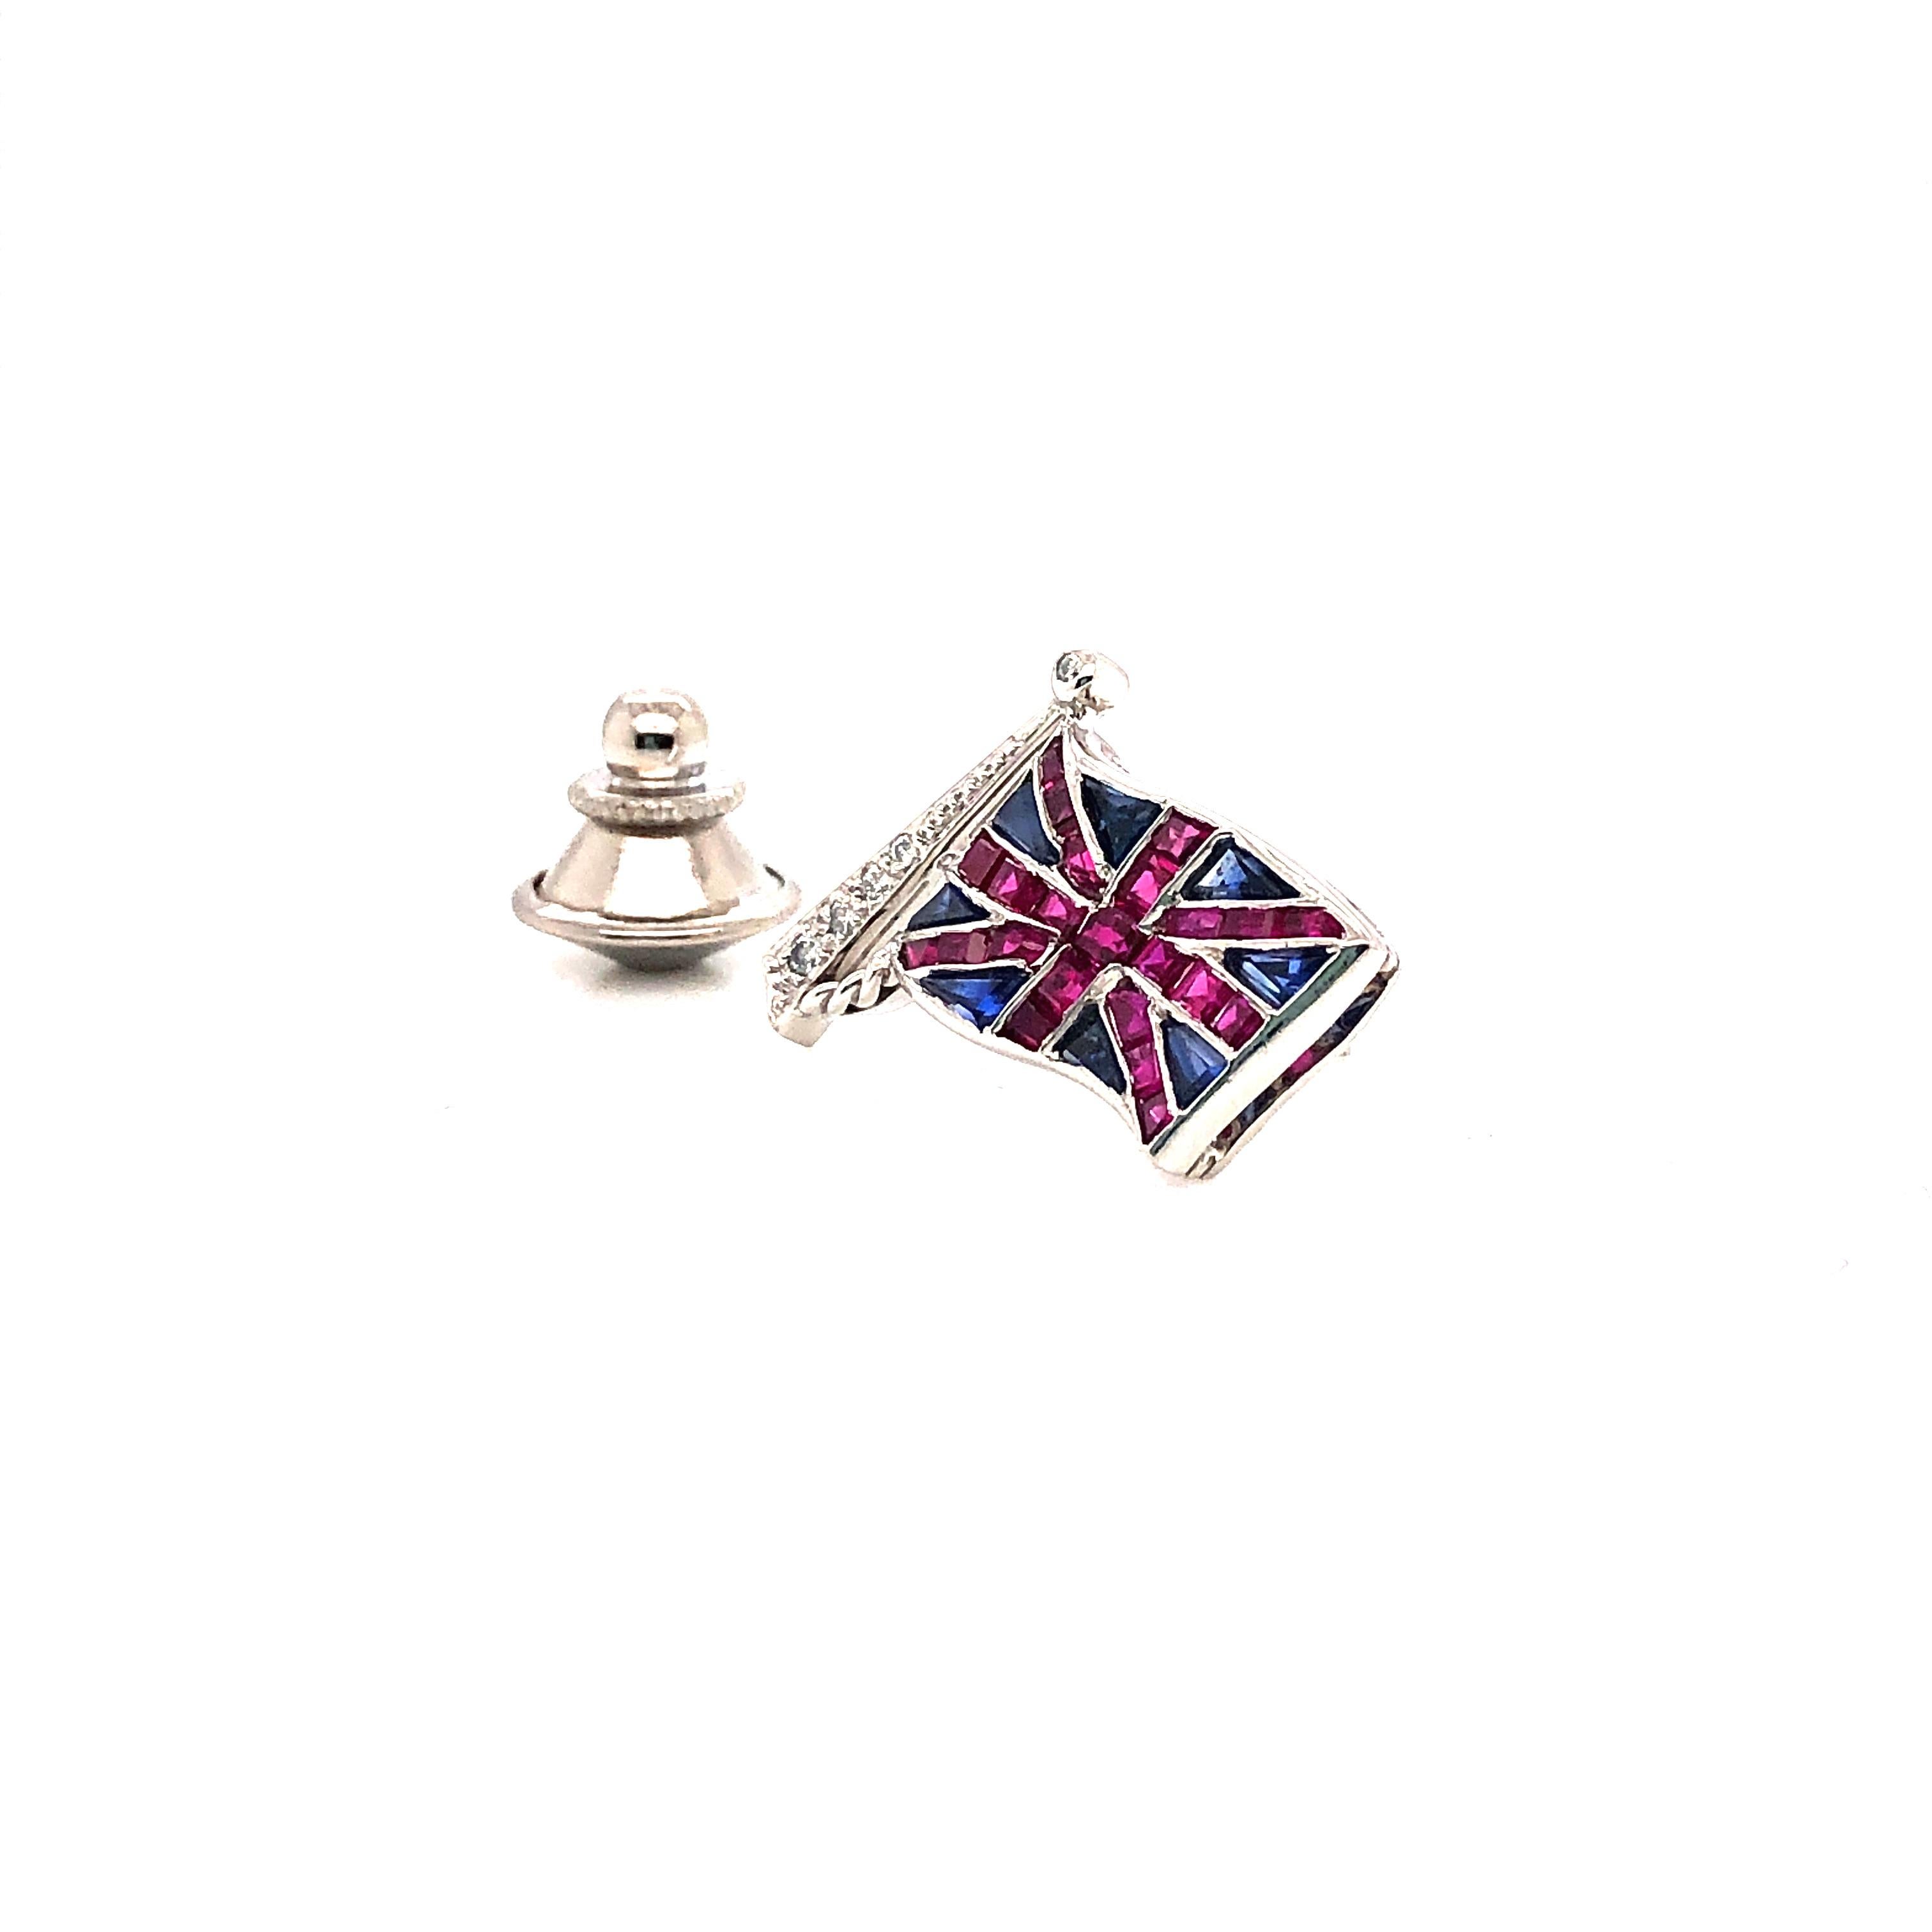 Die Oscar Heyman Platin-Brosche mit der Union Jack Flagge enthält Rubine (0,76cts), Saphire (0,64cts) und Diamanten (0,05cts). Sie ist mit der Herstellermarke IRID PLAT und der Seriennummer 902873 gestempelt.

Individuelle Handgravuren sind auf